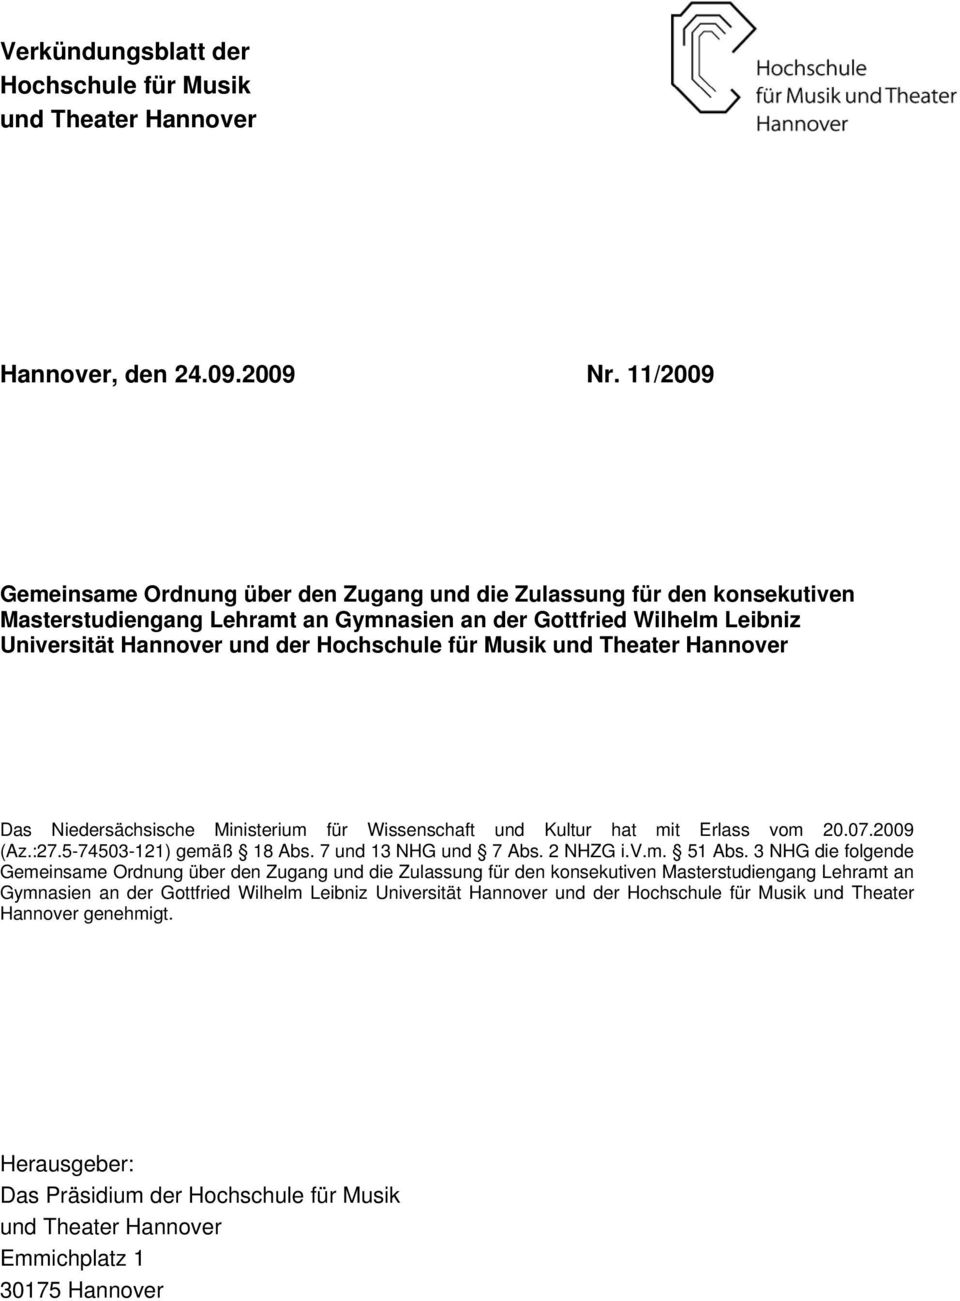 Musik und Theater Hannover Das Niedersächsische Ministerium für Wissenschaft und Kultur hat mit Erlass vom 20.07.2009 (Az.:27.5-74503-121) gemäß 18 Abs. 7 und 13 NHG und 7 Abs. 2 NHZG i.v.m. 51 Abs.